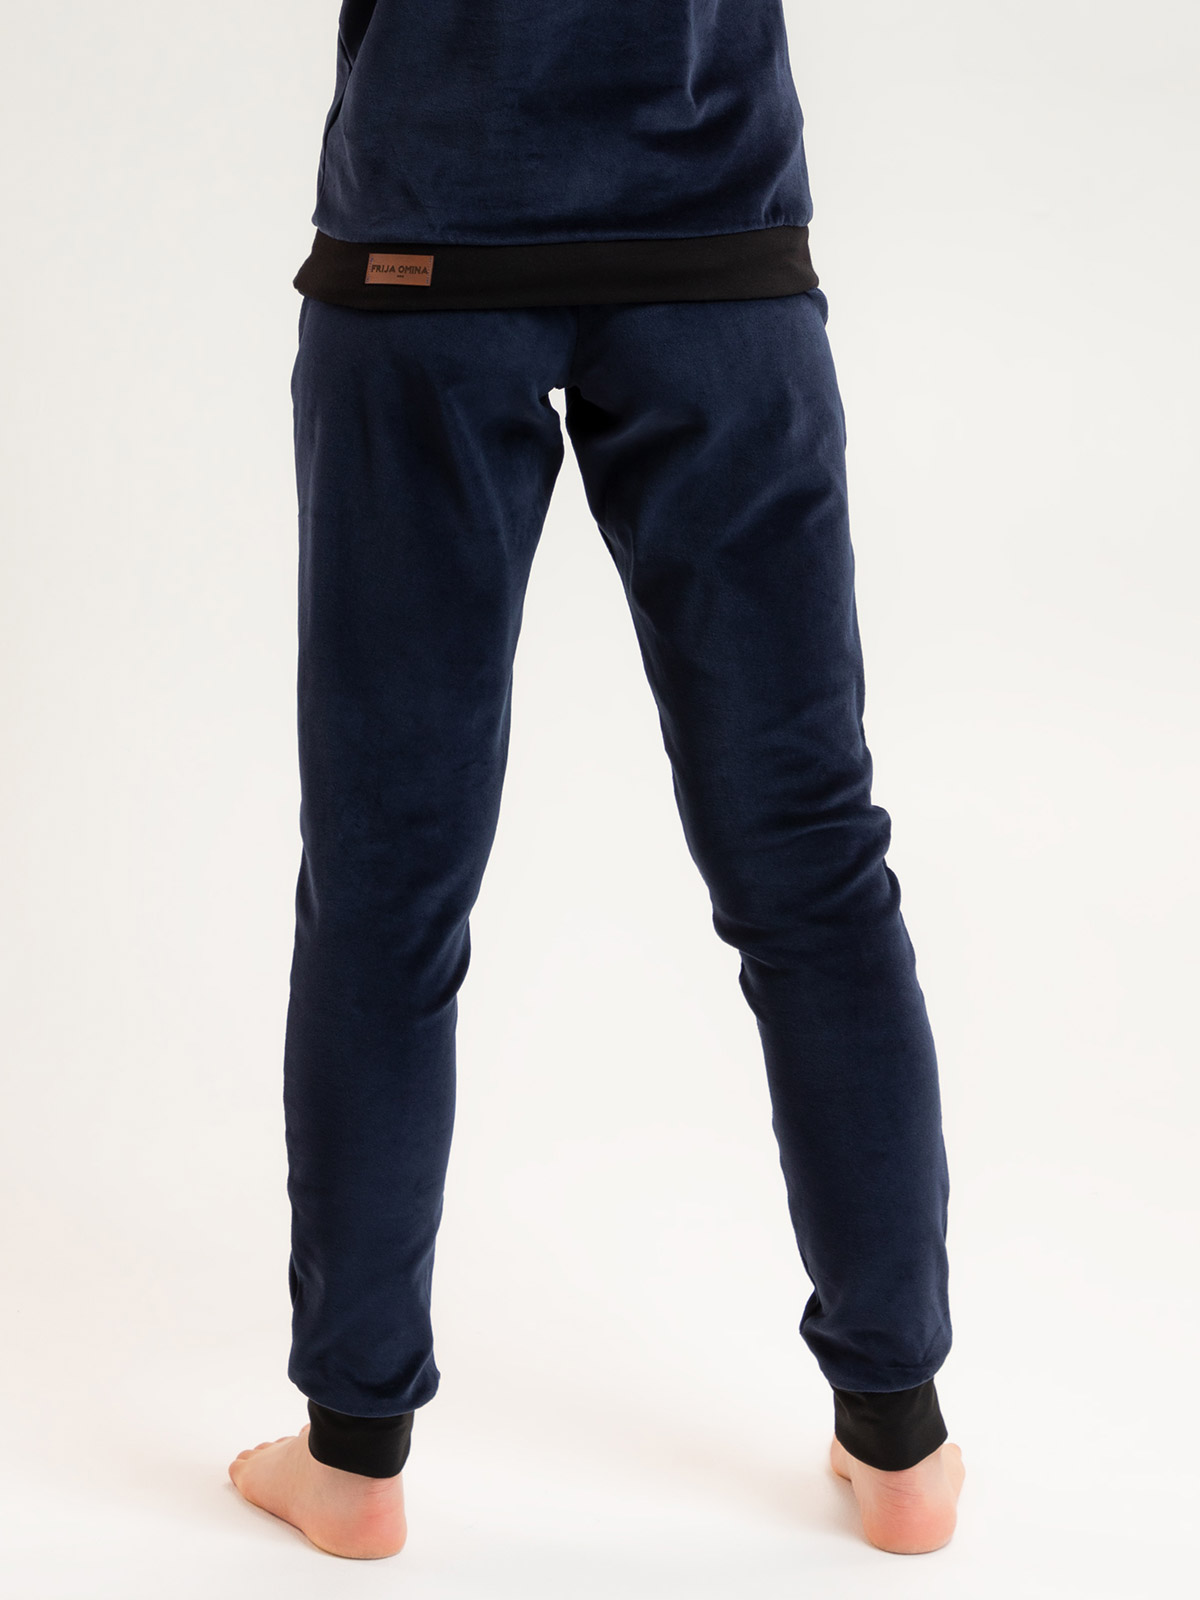 Organic velour pants Hygge blue / black 3